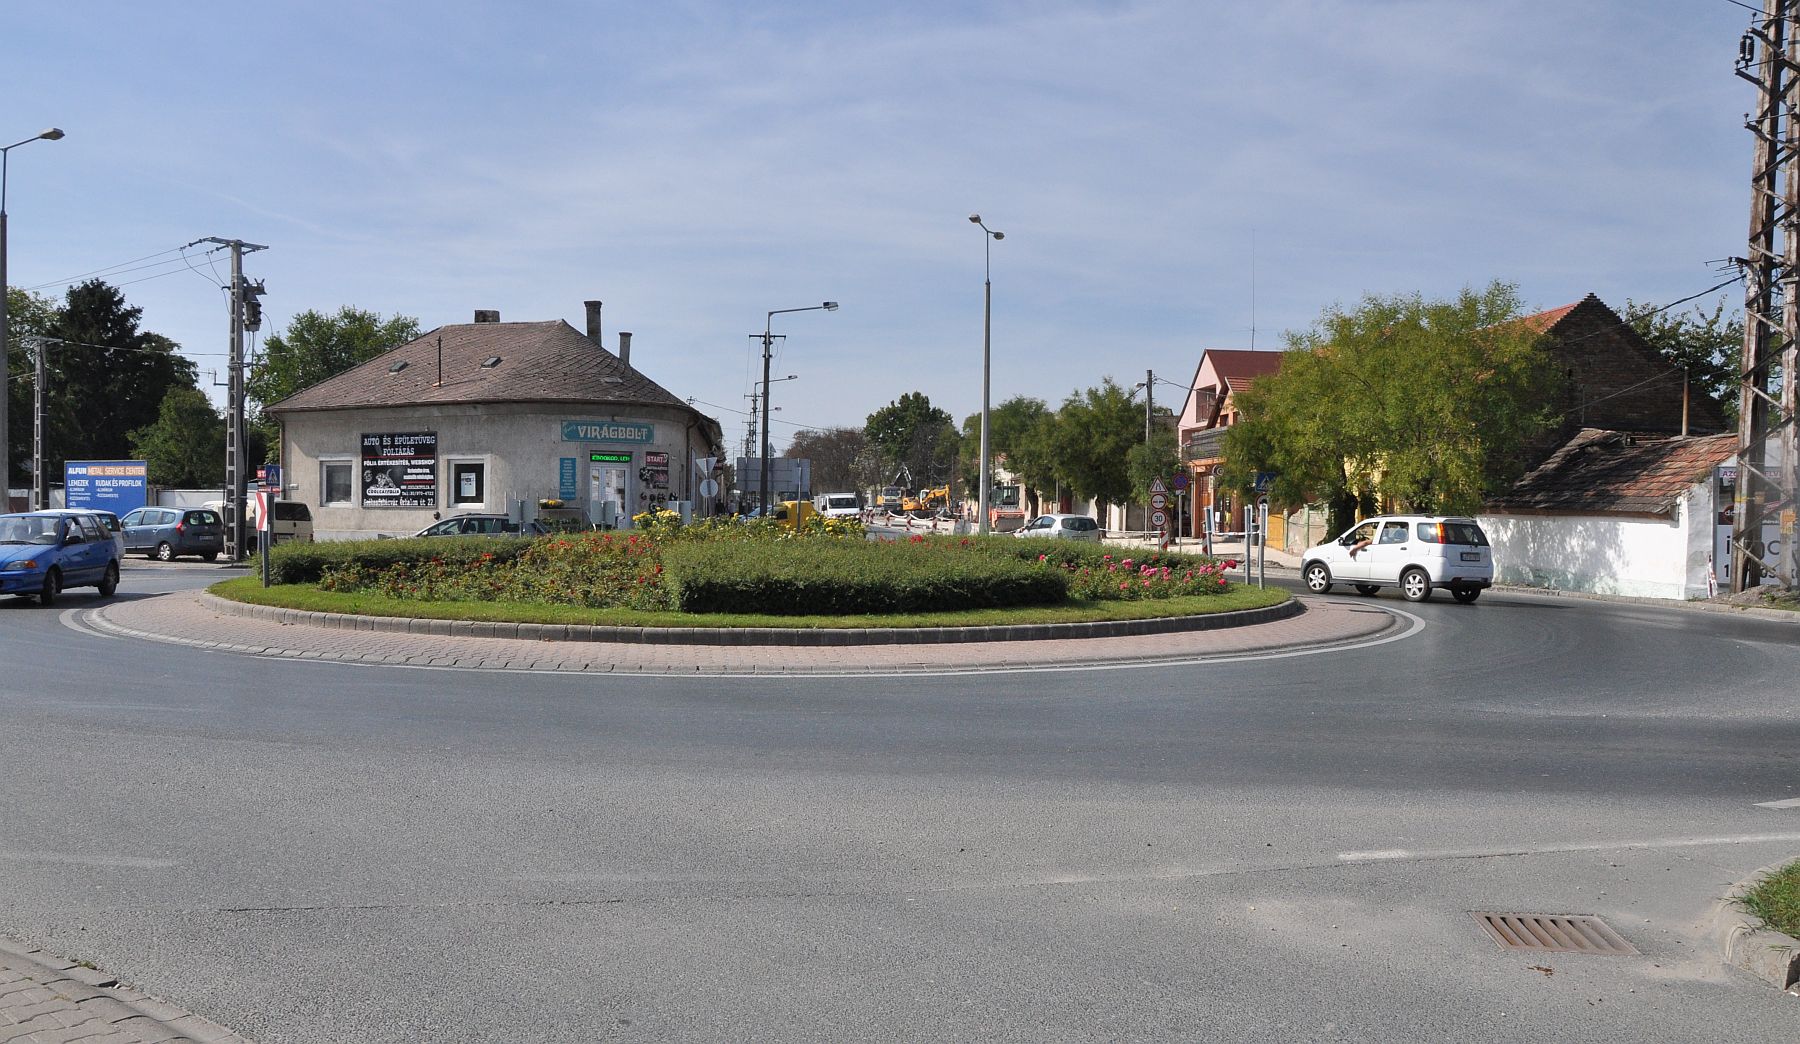 Kedden kezdődik a Széchenyi út - Csíkvári út körforgalom felújítása